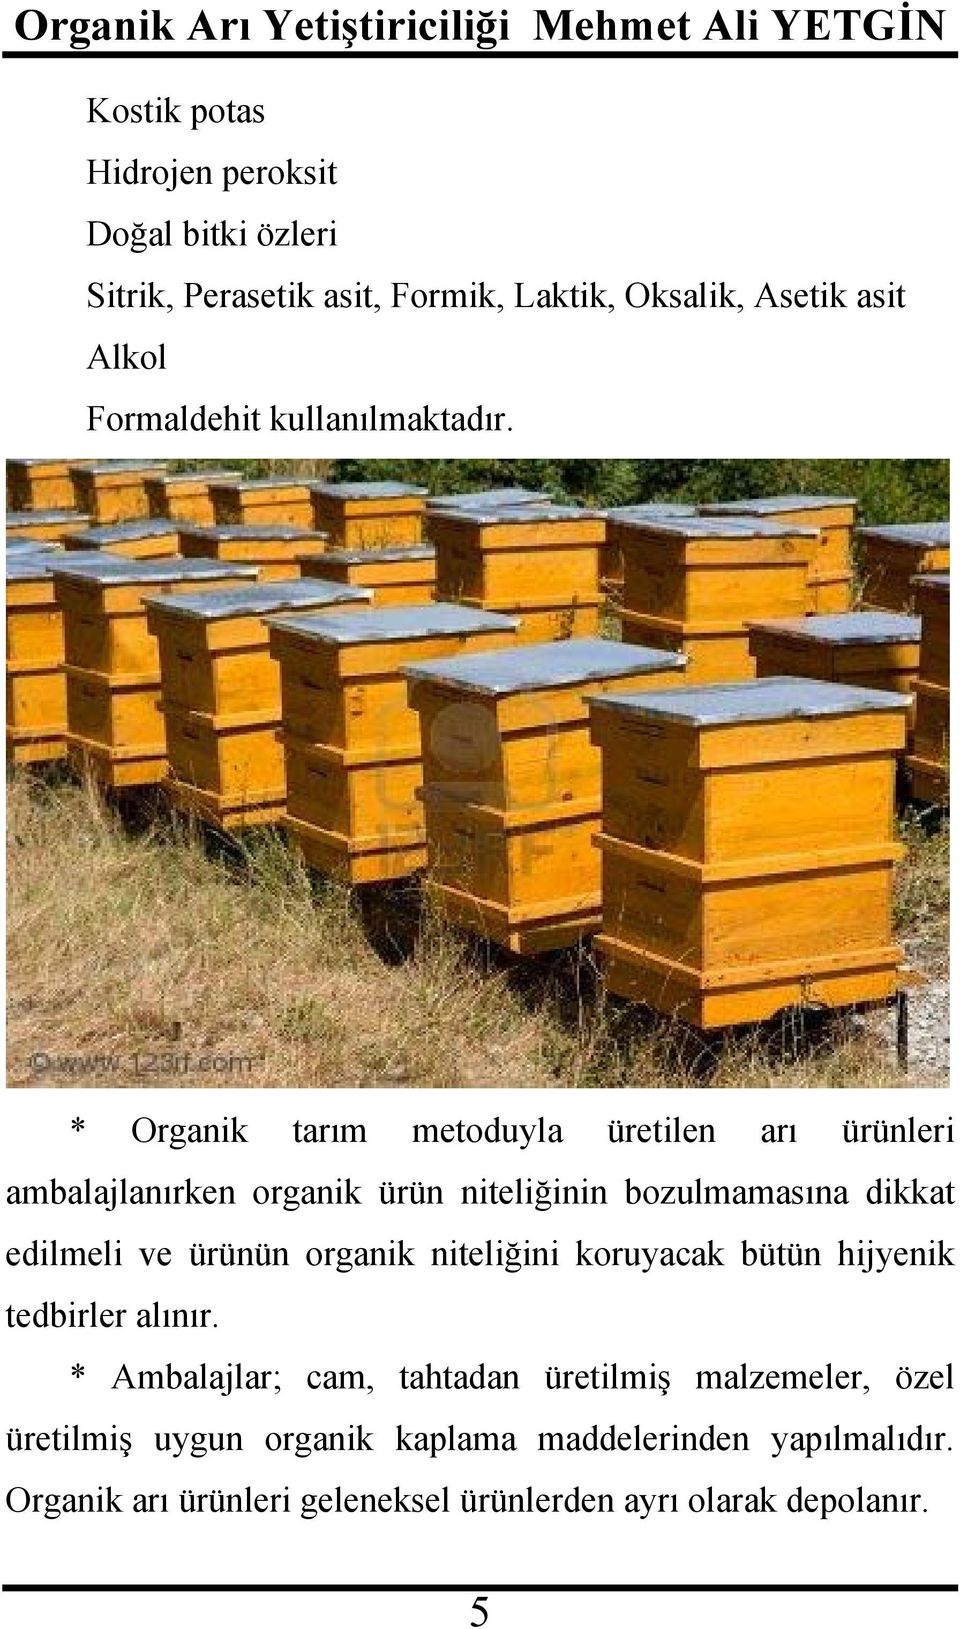 * Organik tarım metoduyla üretilen arı ürünleri ambalajlanırken organik ürün niteliğinin bozulmamasına dikkat edilmeli ve ürünün